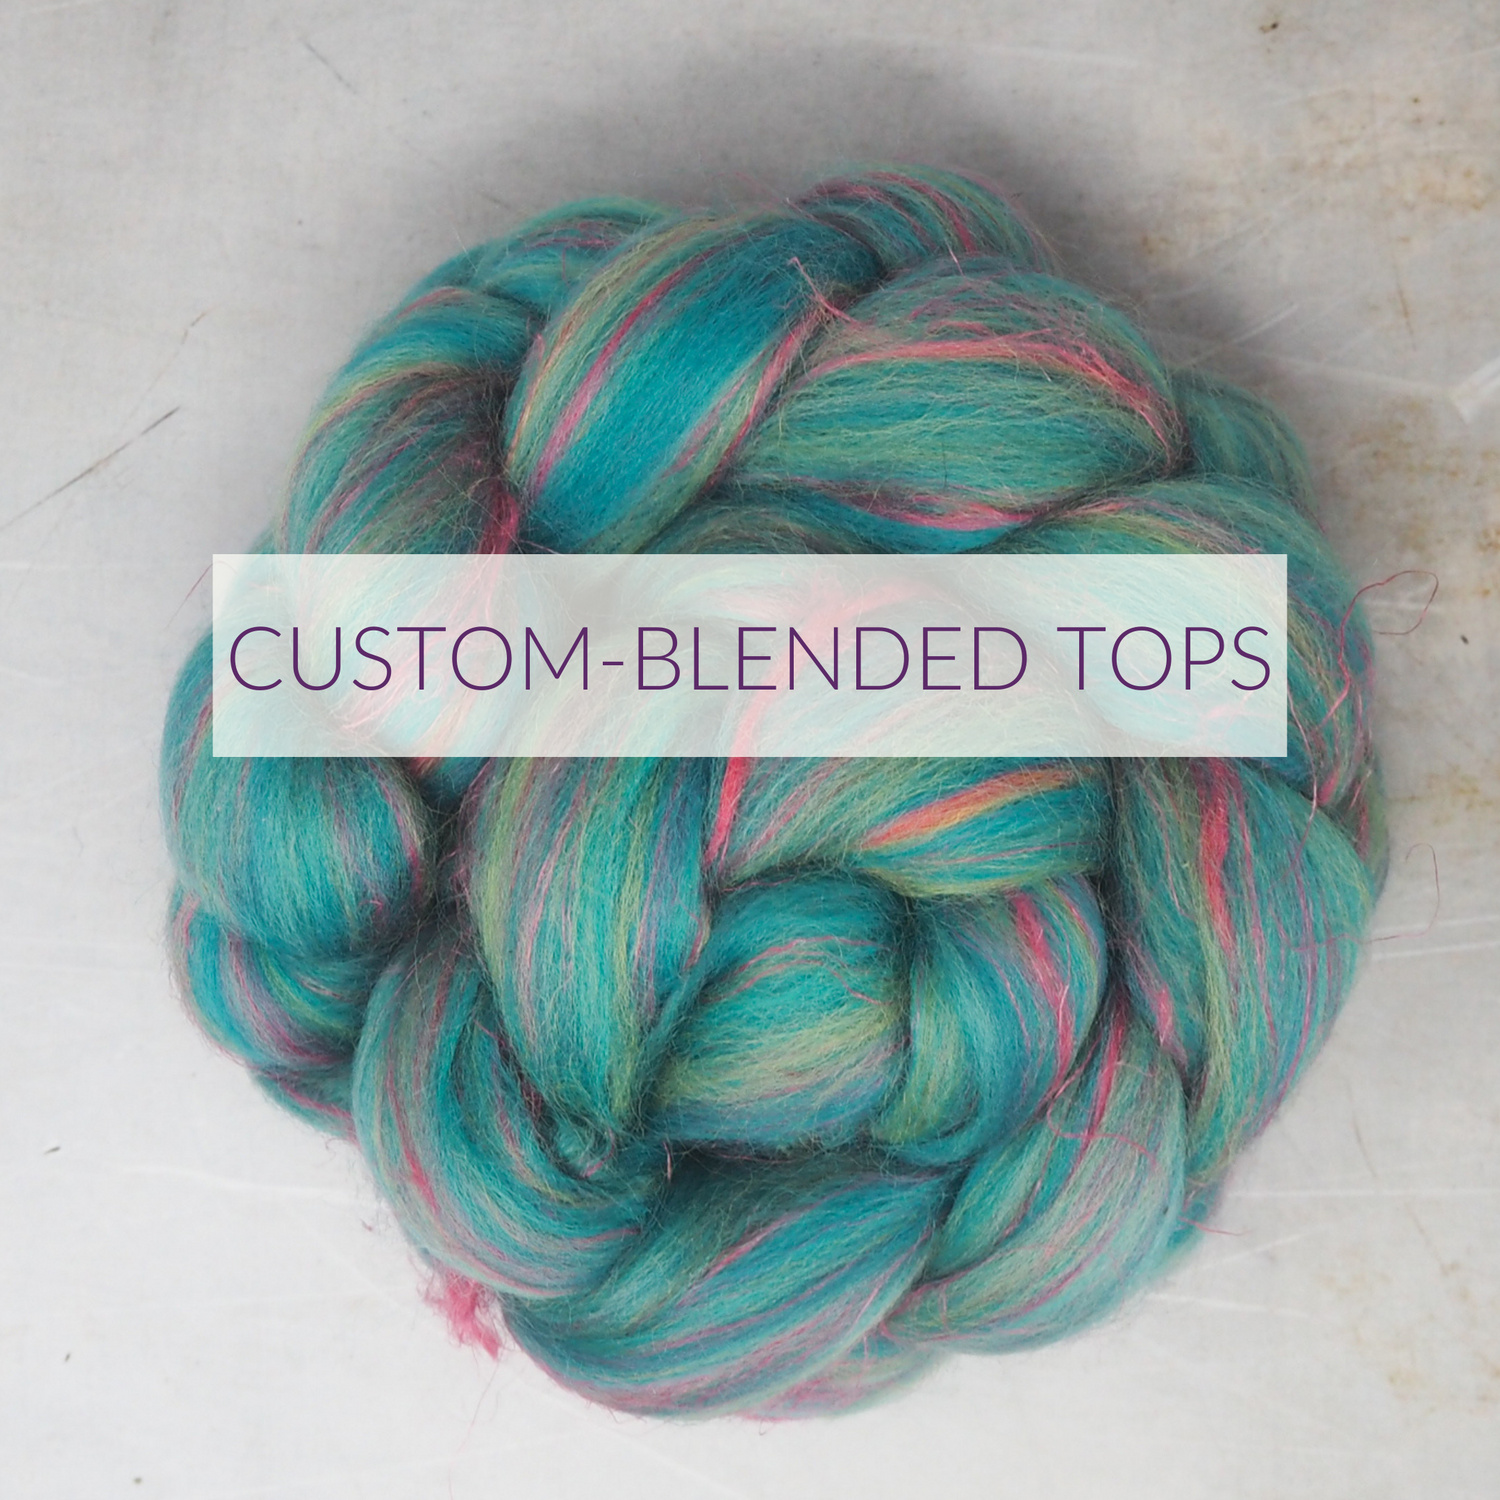 Custom-blended tops